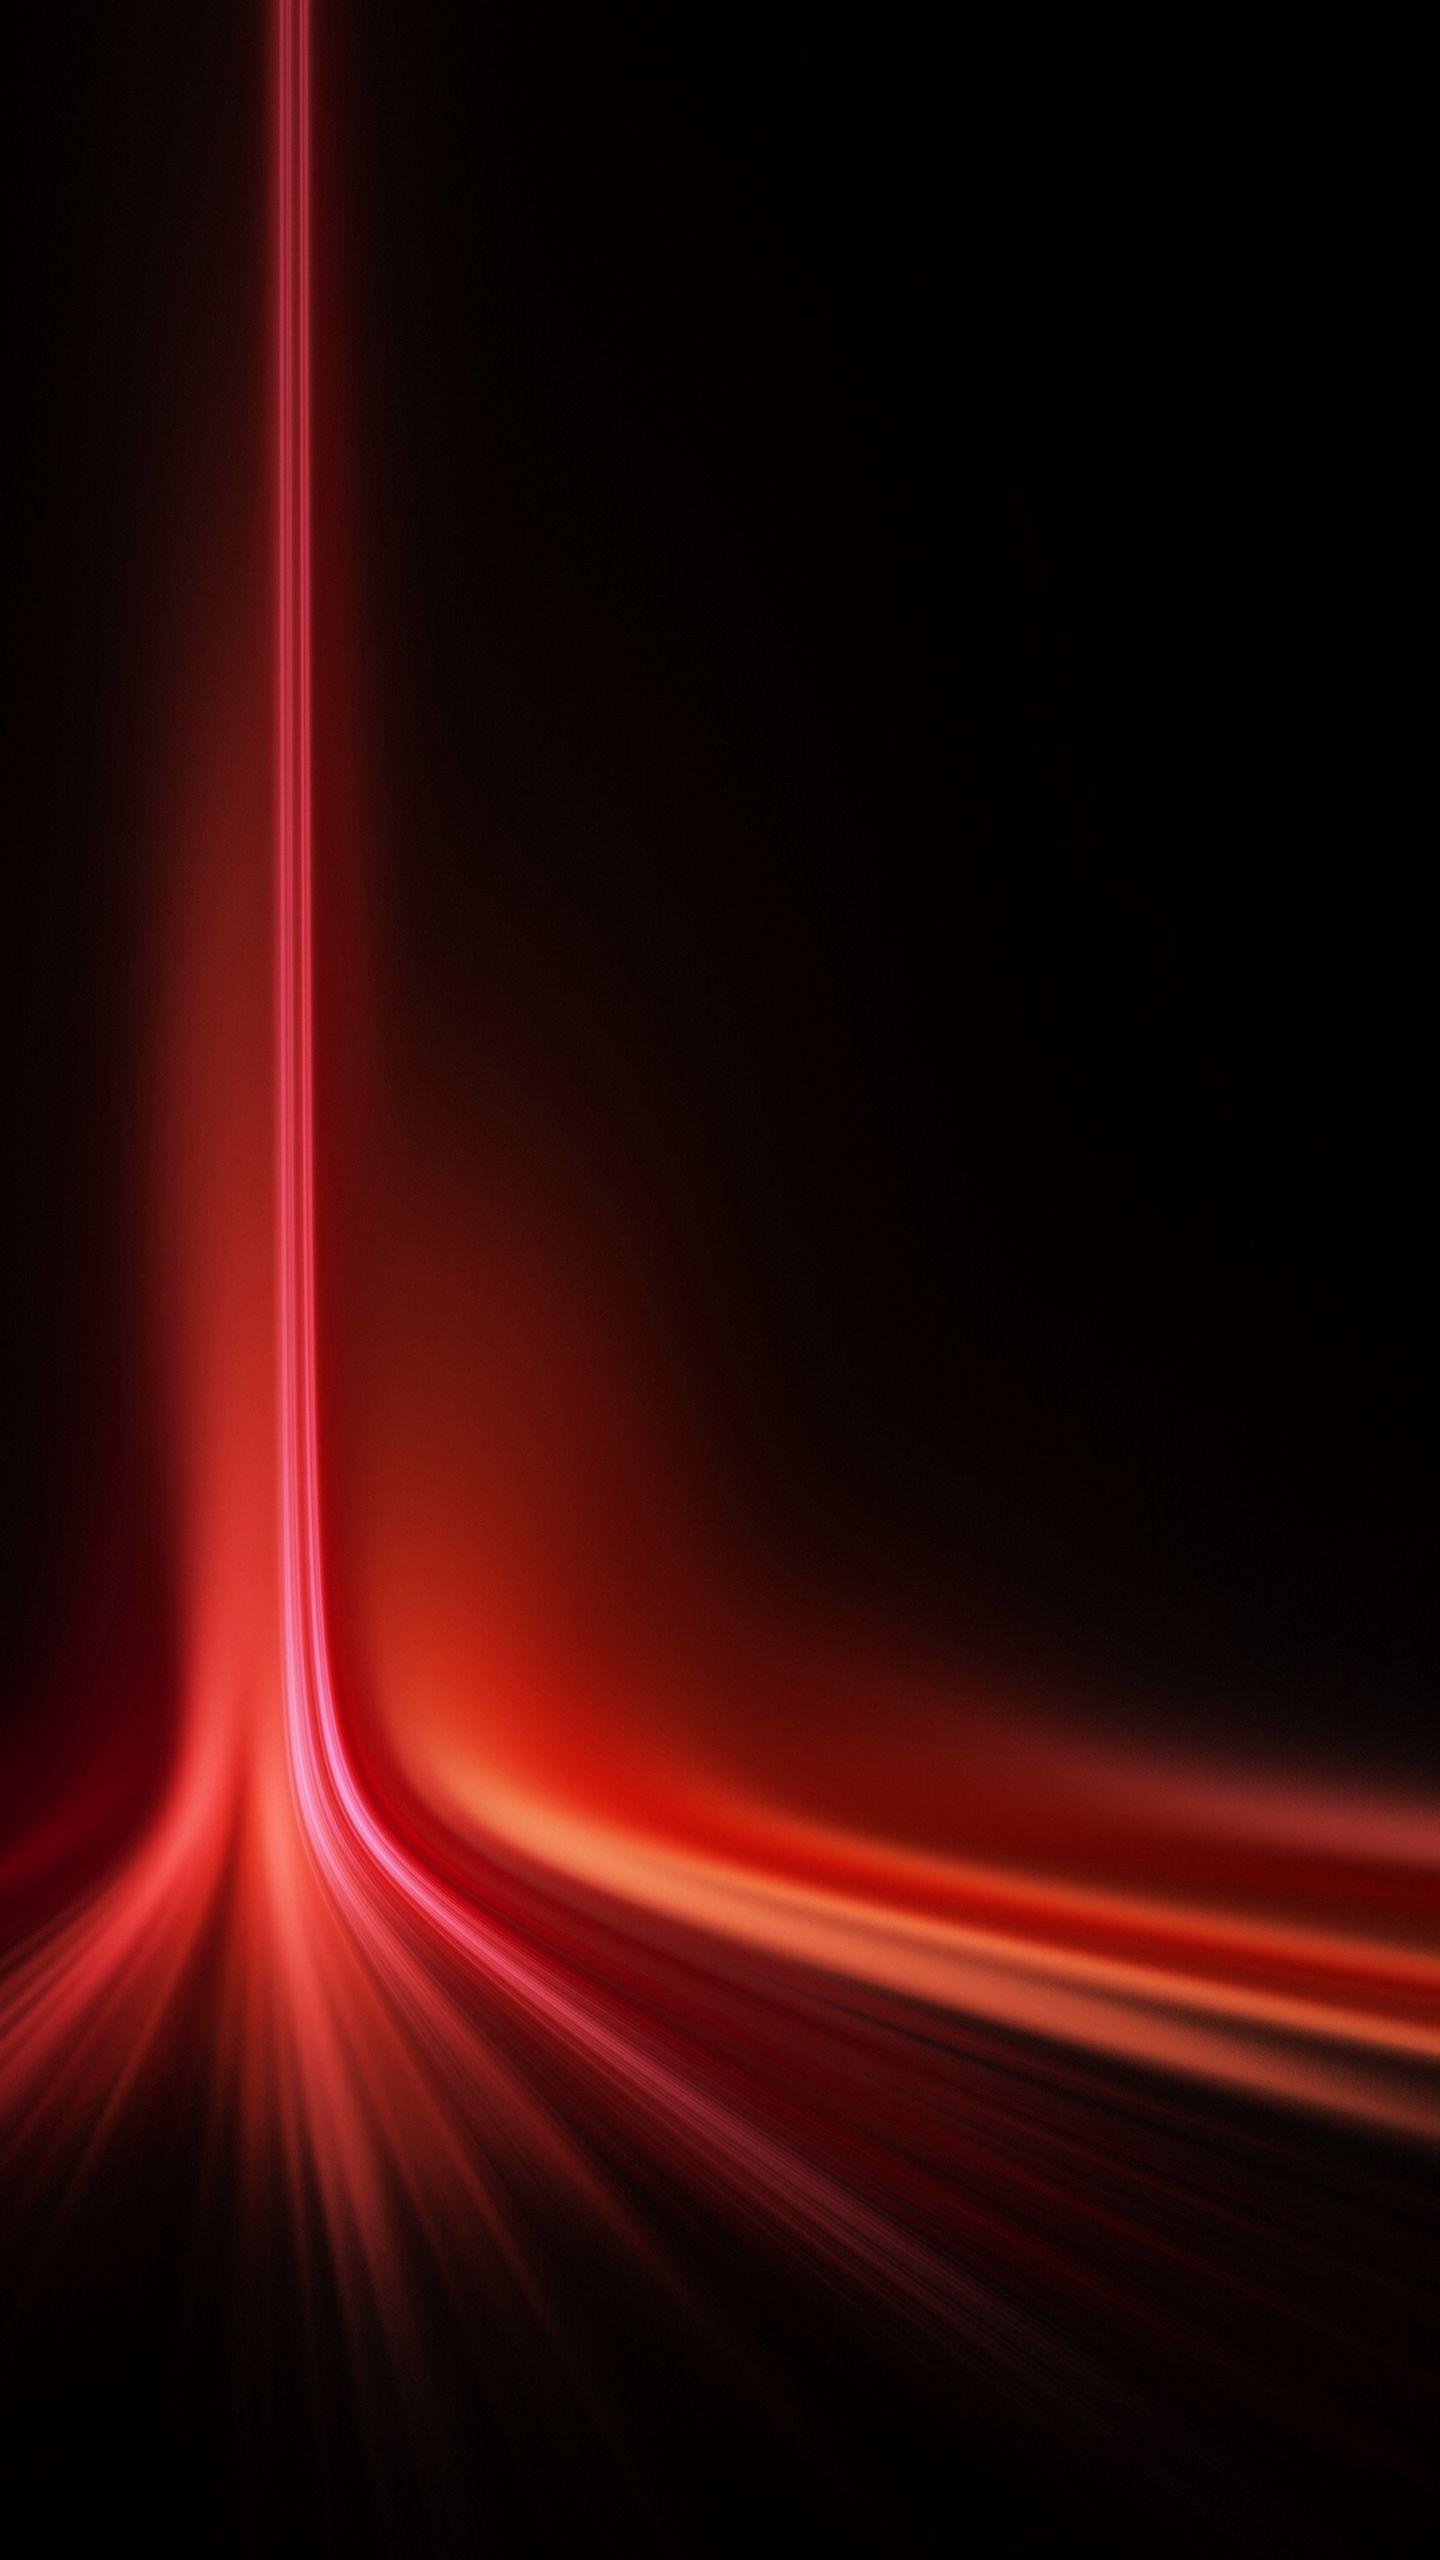 1440x2560 Hình nền Samsung Galaxy S6 Red Laser Awesome - 1440 x 2560